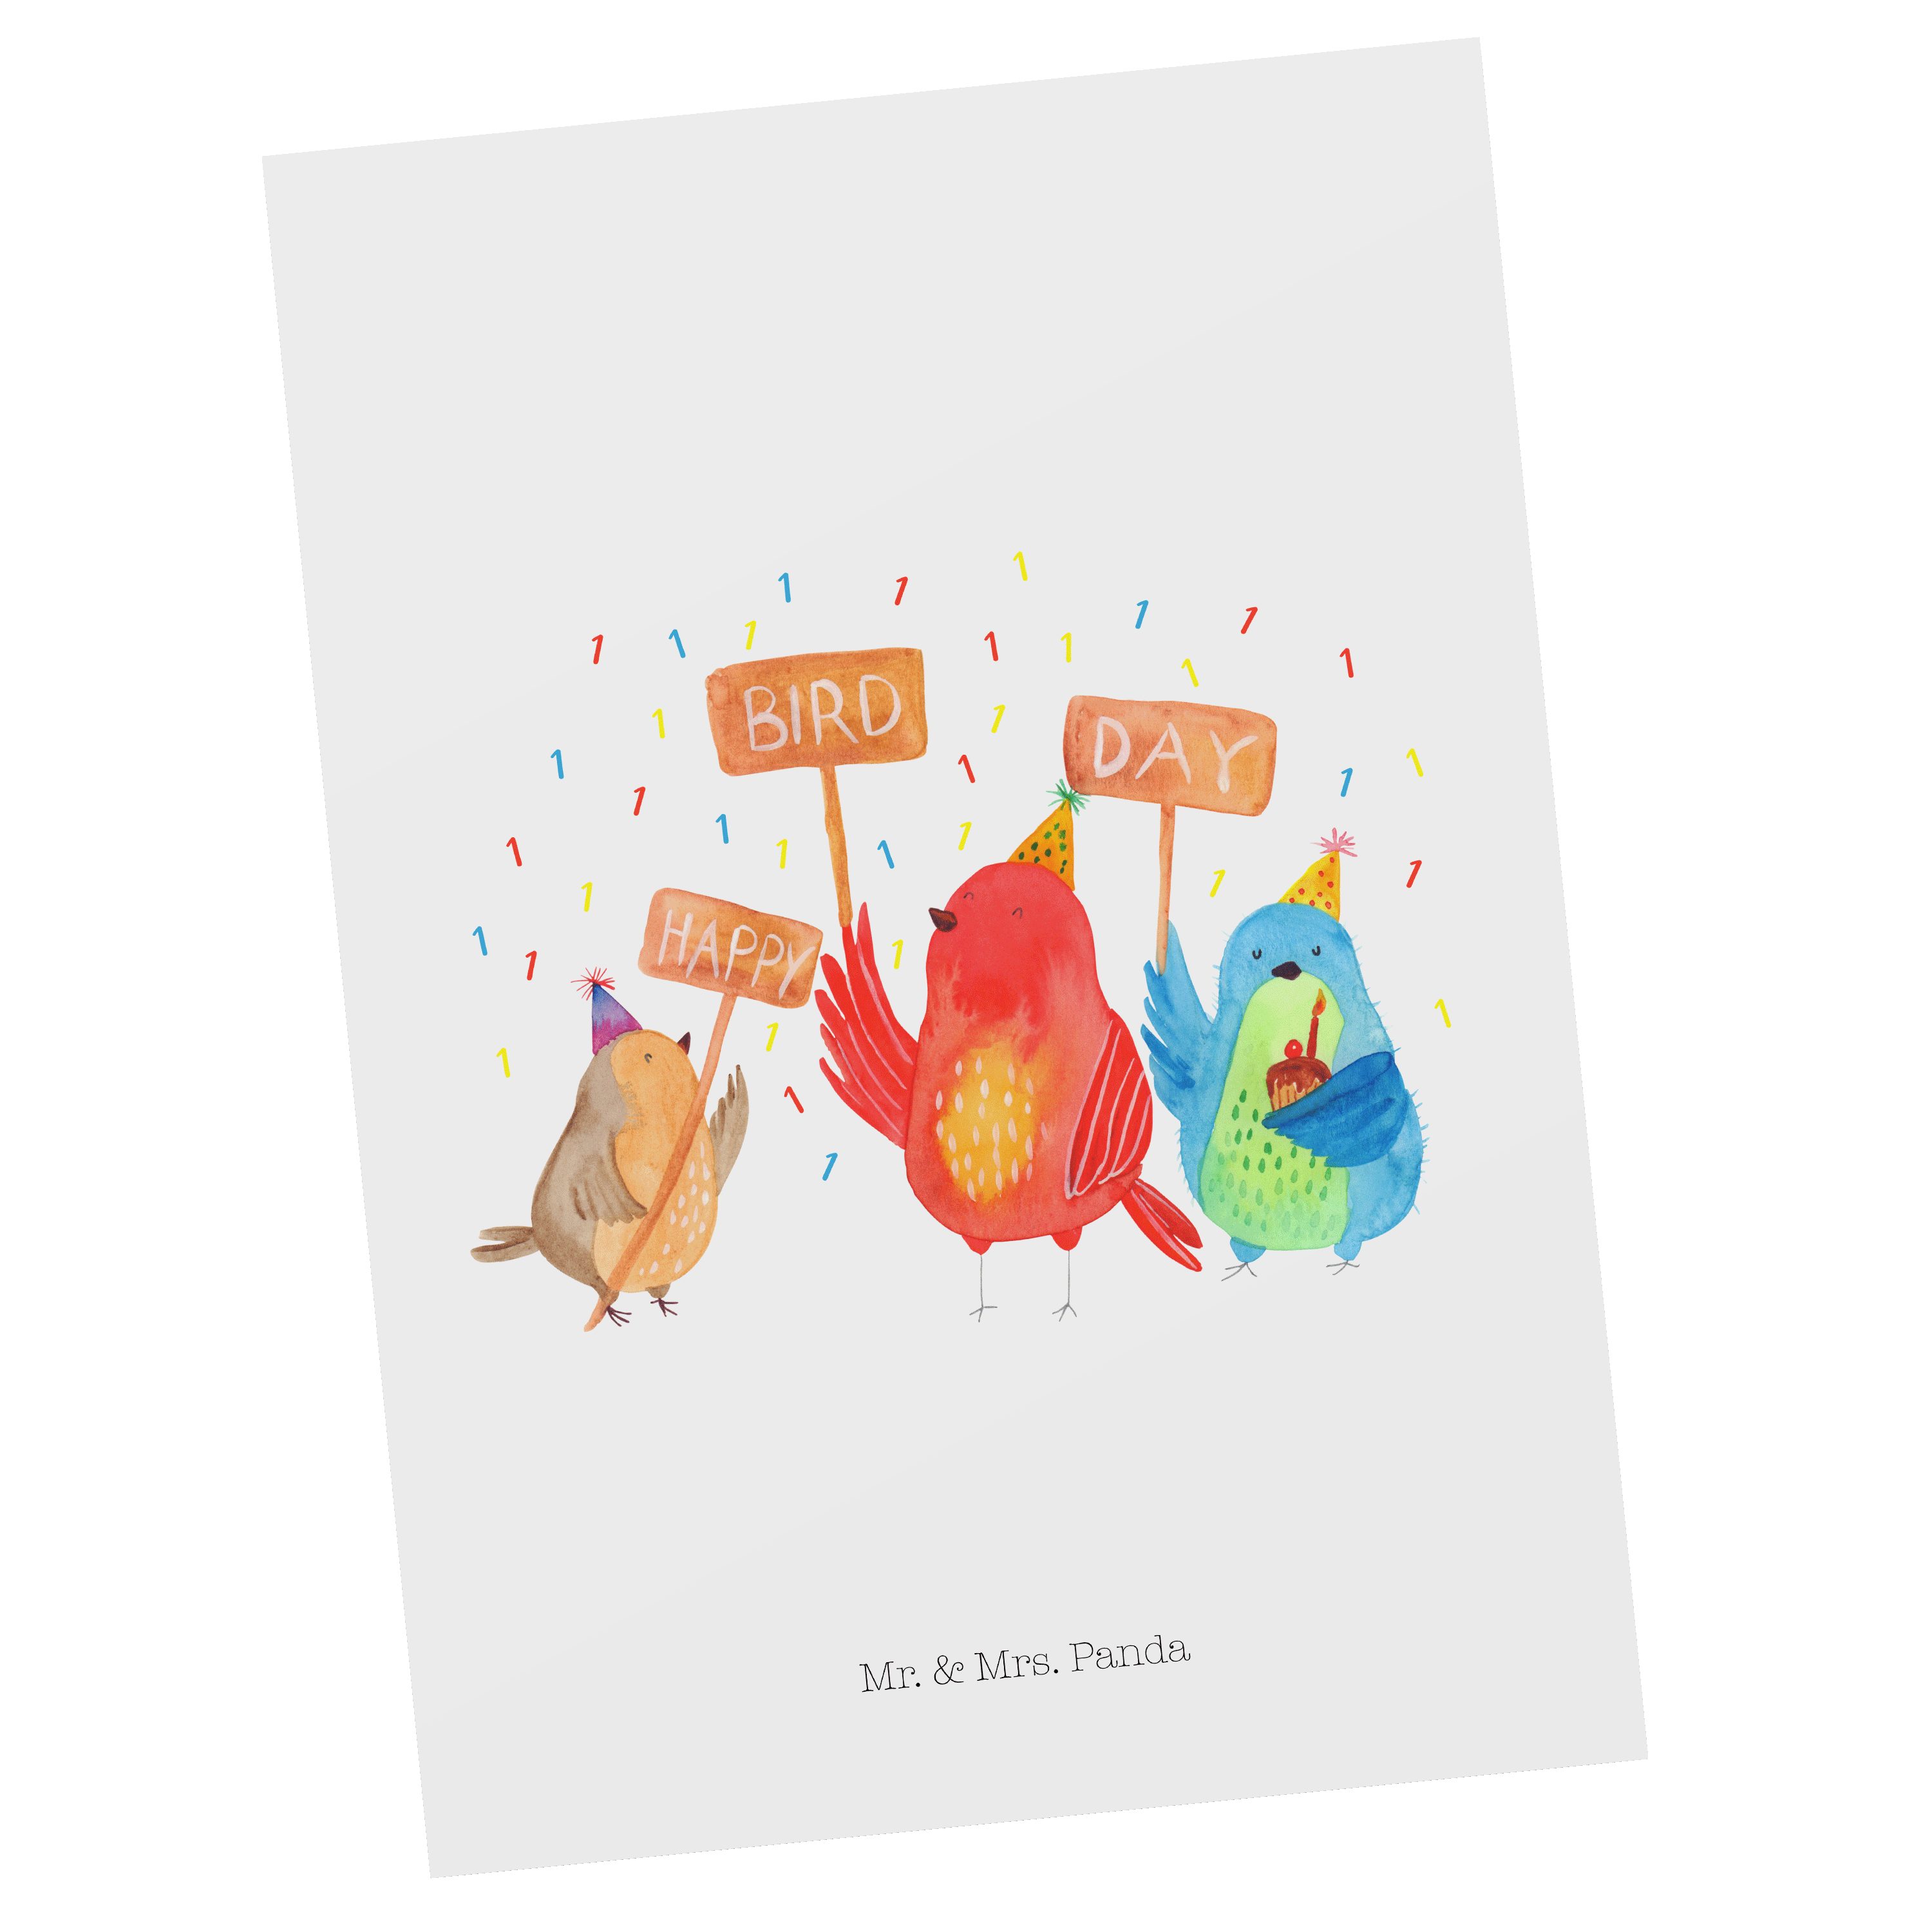 Mr. & Mrs. Panda Einlad - Geschenk, Geburtstag 1. Bird Weiß - Postkarte Happy Day Ansichtskarte